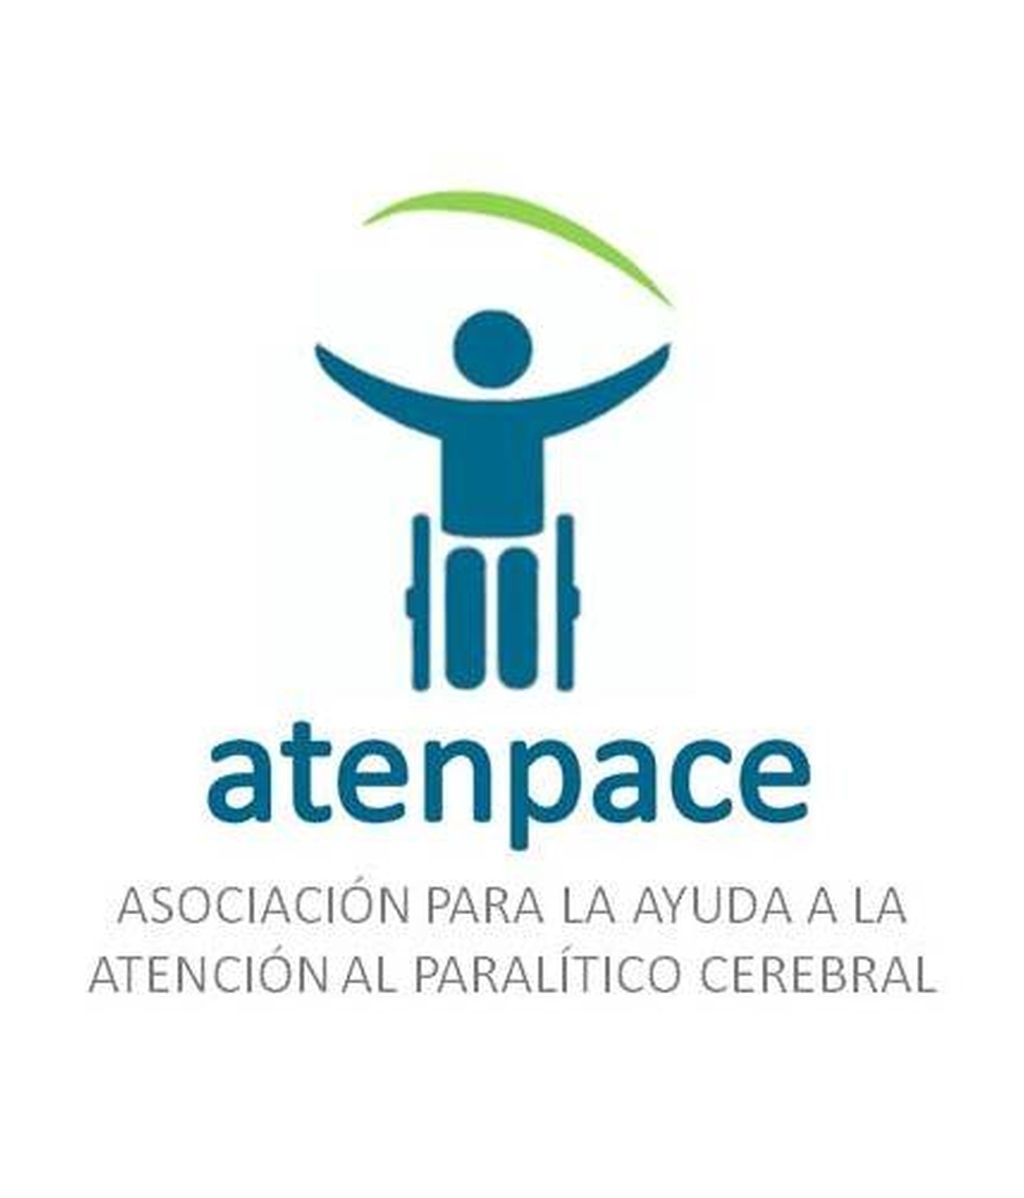 Atenpace